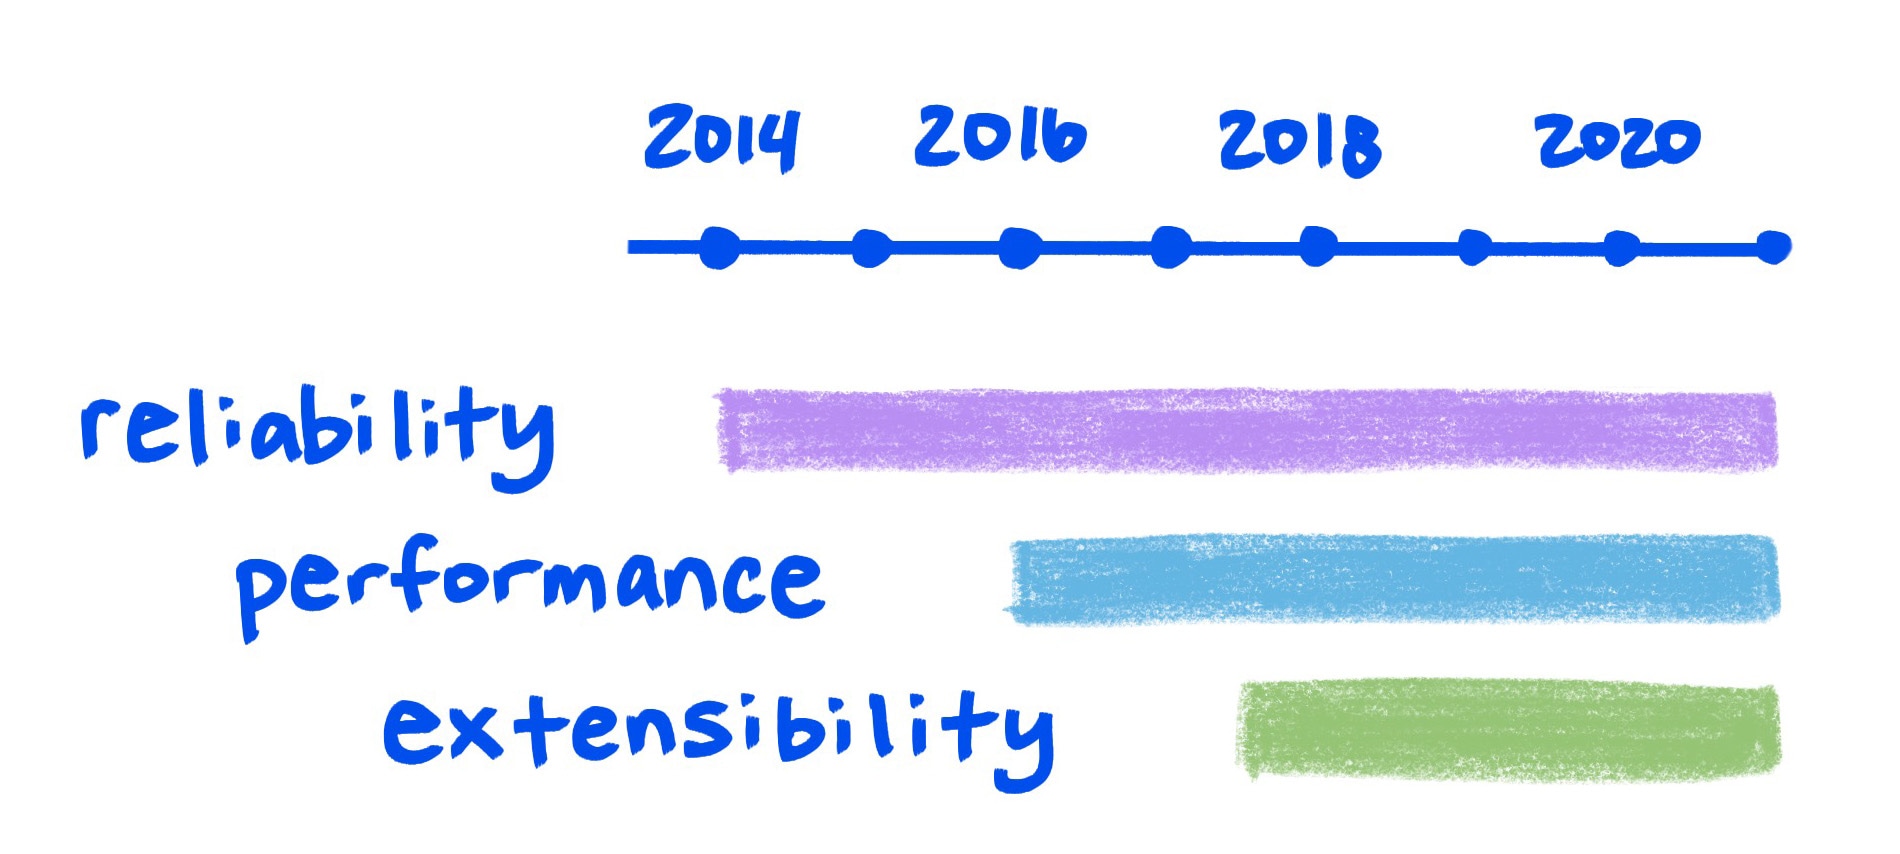 Grafik sketsa menunjukkan keandalan, performa, dan ekstensibilitas yang meningkat seiring waktu